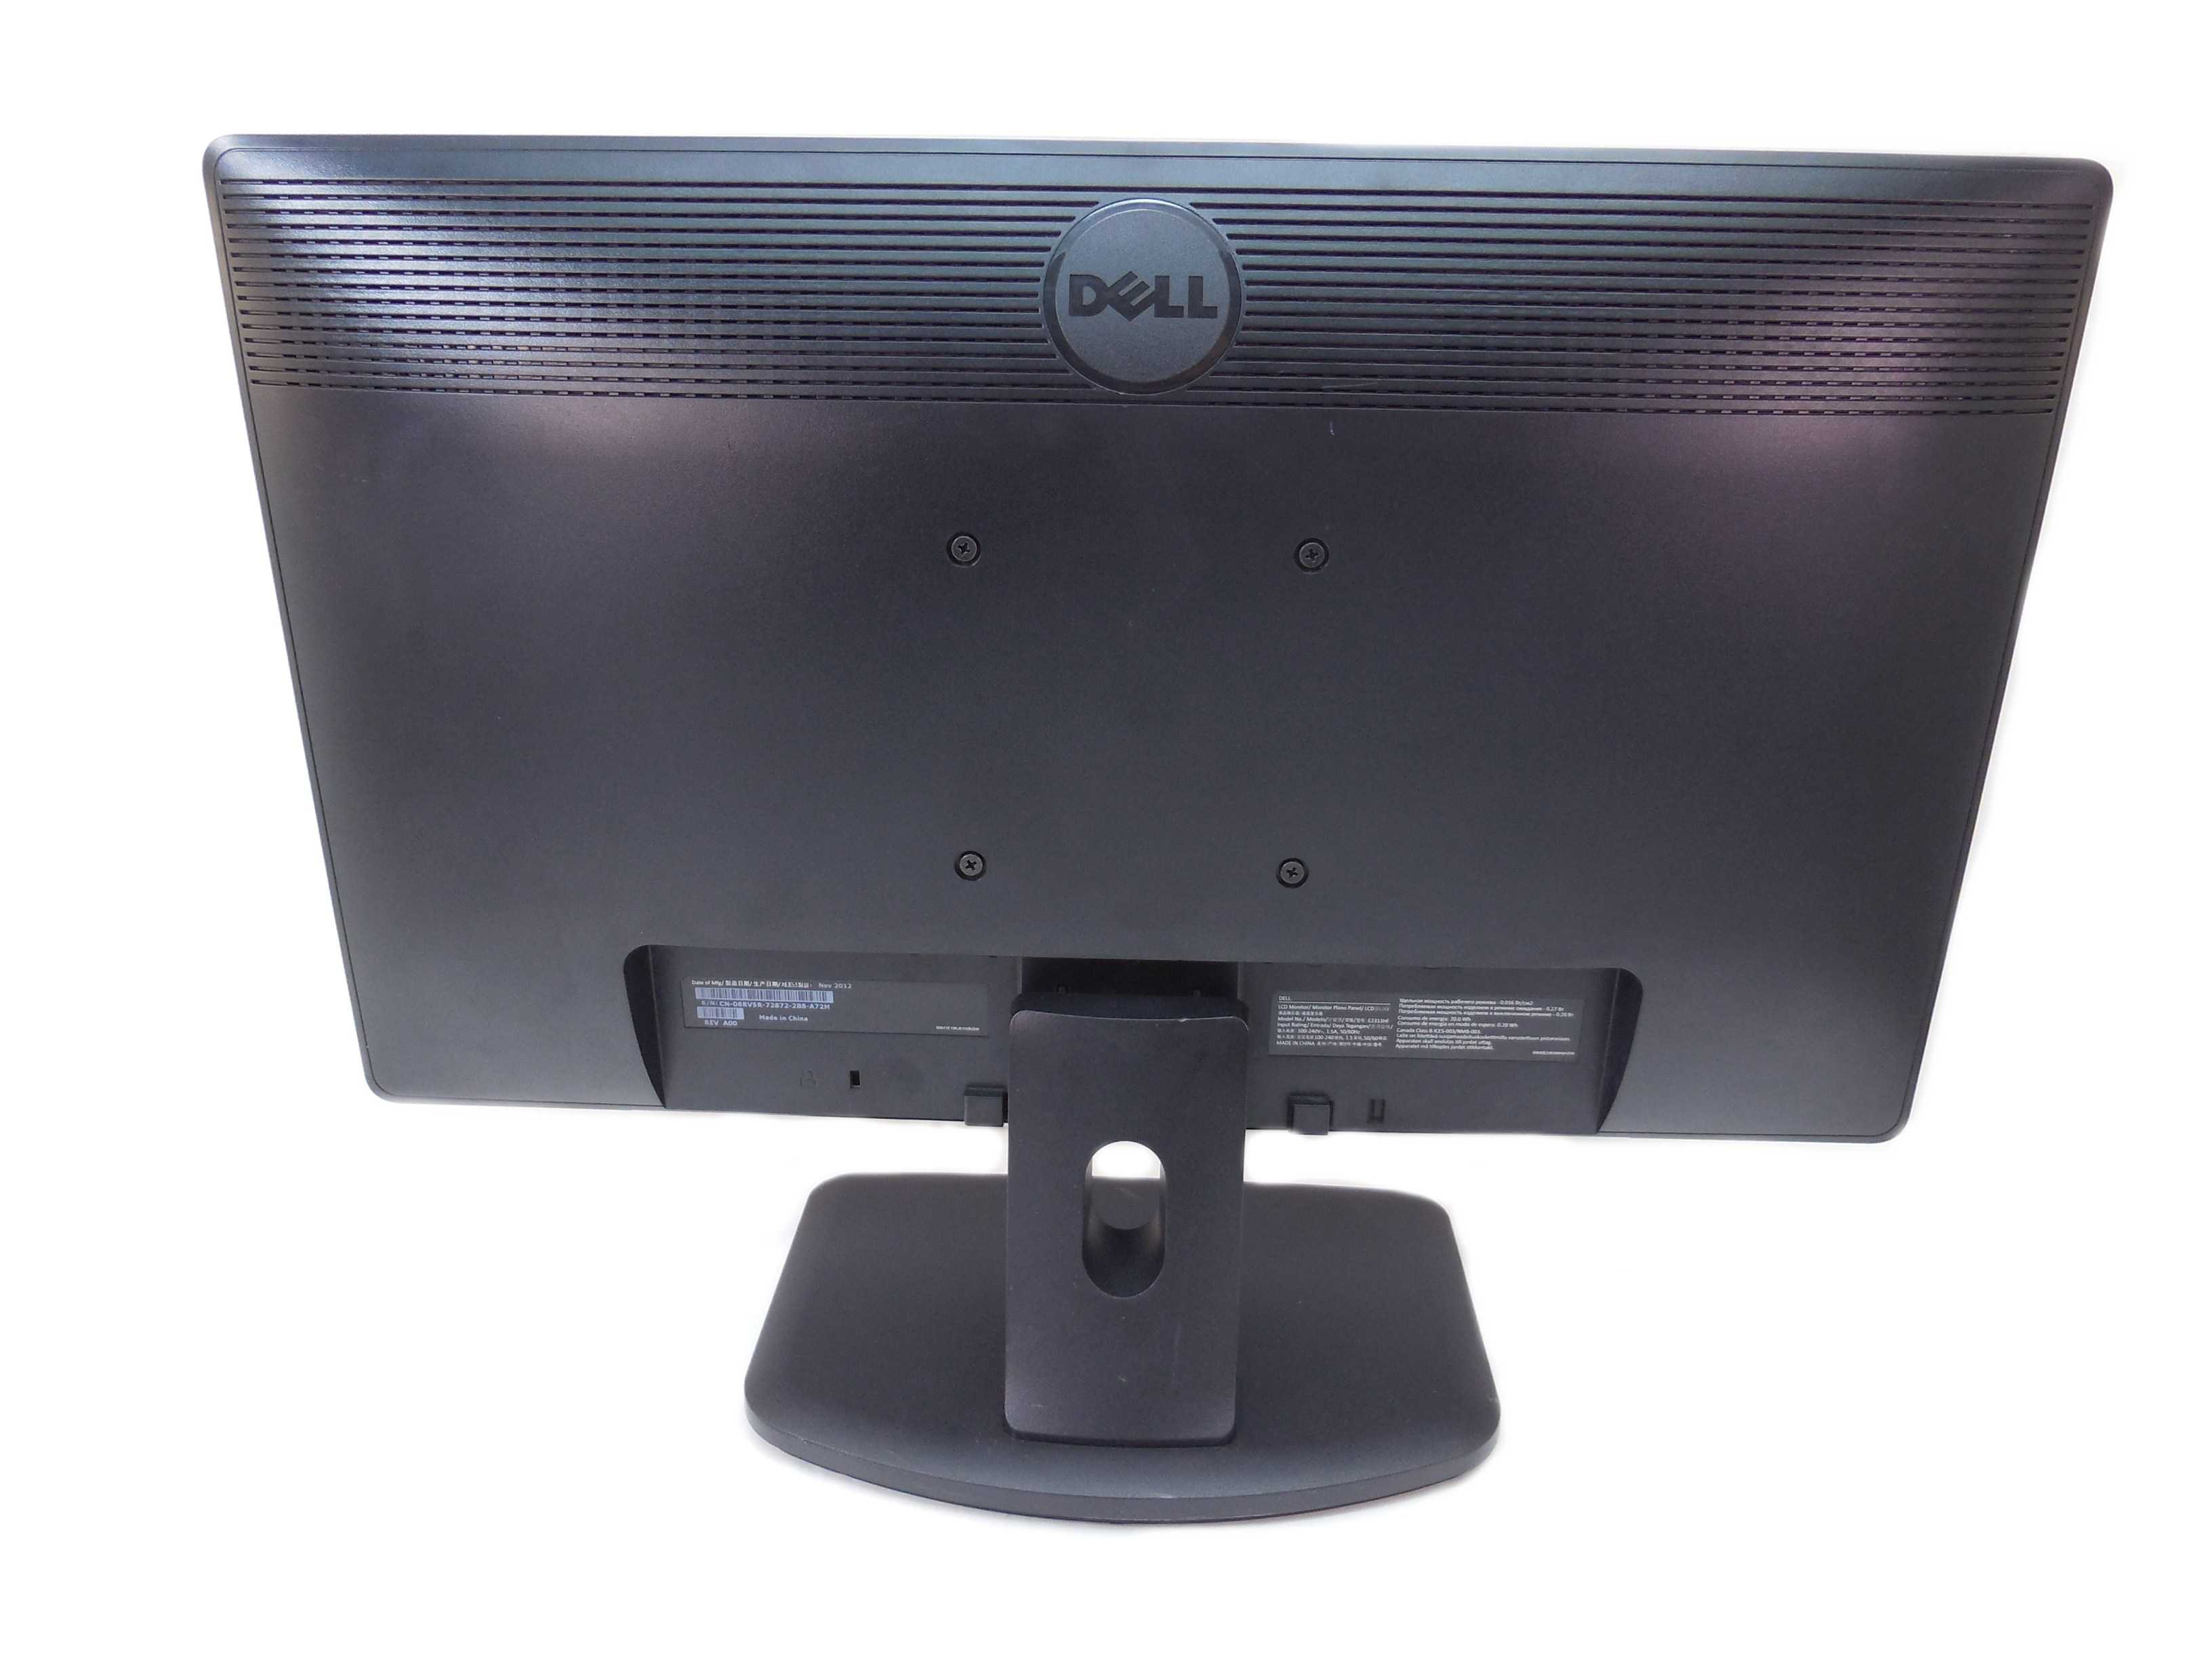 Dell e2313h (черный) - купить , скидки, цена, отзывы, обзор, характеристики - мониторы